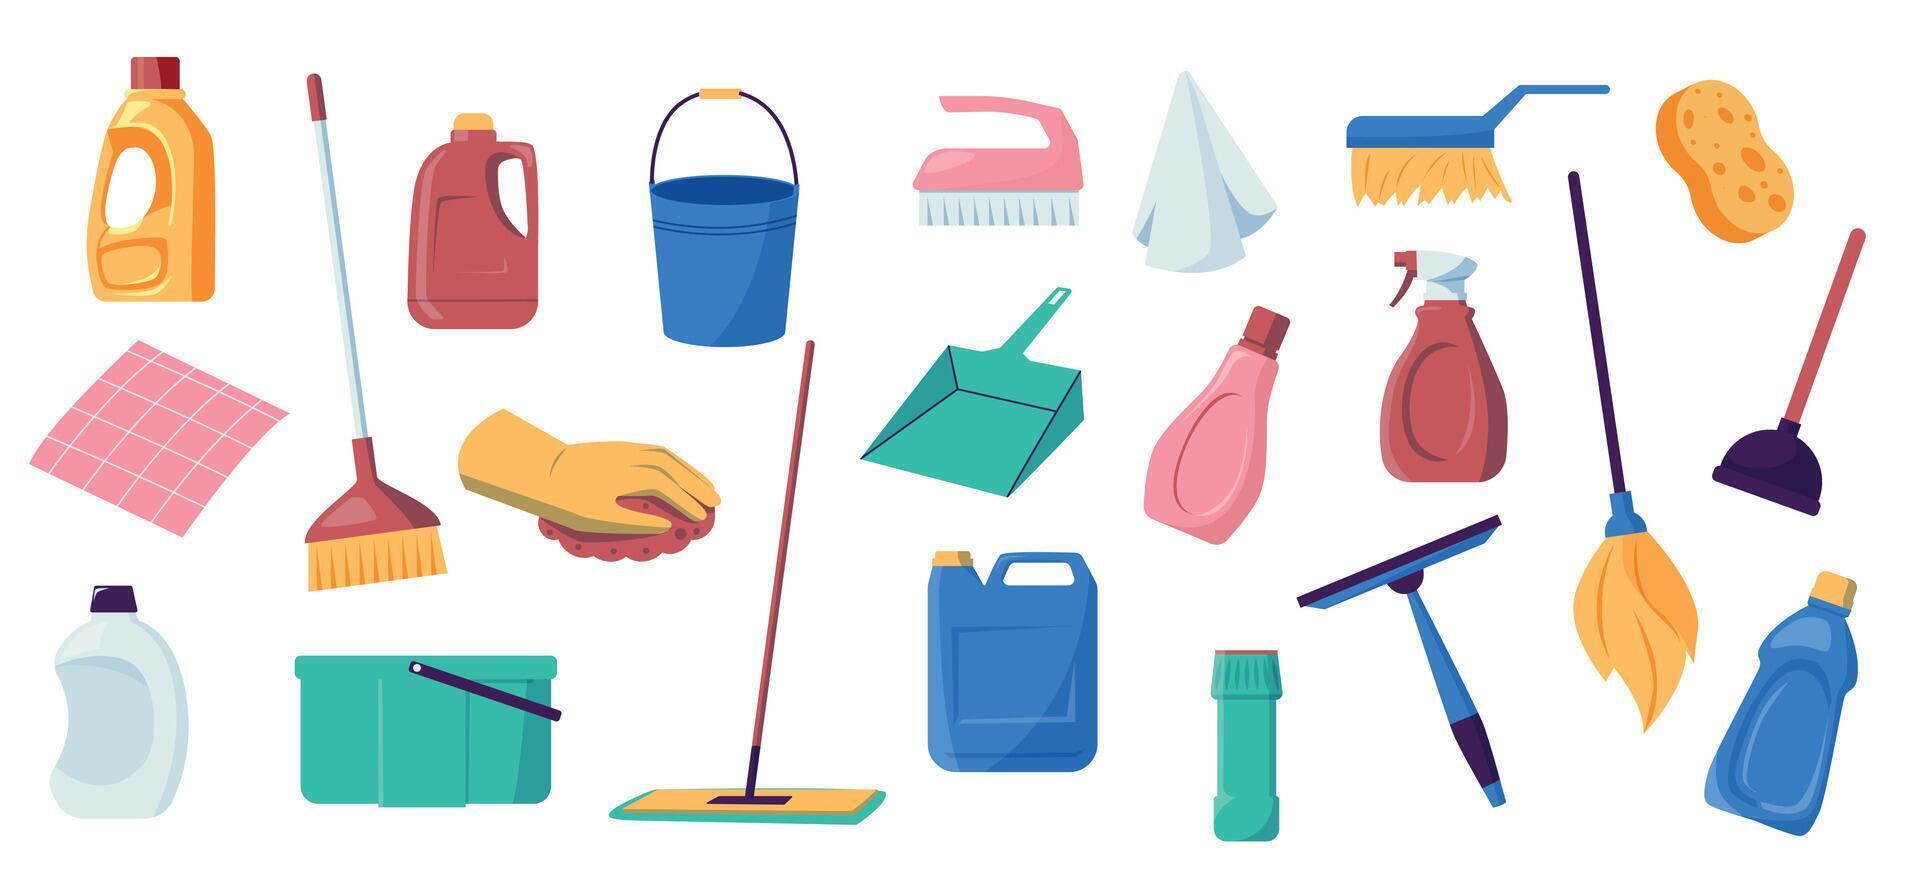 Haus Reinigung Werkzeug. Waschen und Reinigung Ausrüstung, Gummi Handschuhe, Schaufel und Bürste, Seife Flasche und Eimer. Vektor Hauswirtschaft chemisch einstellen